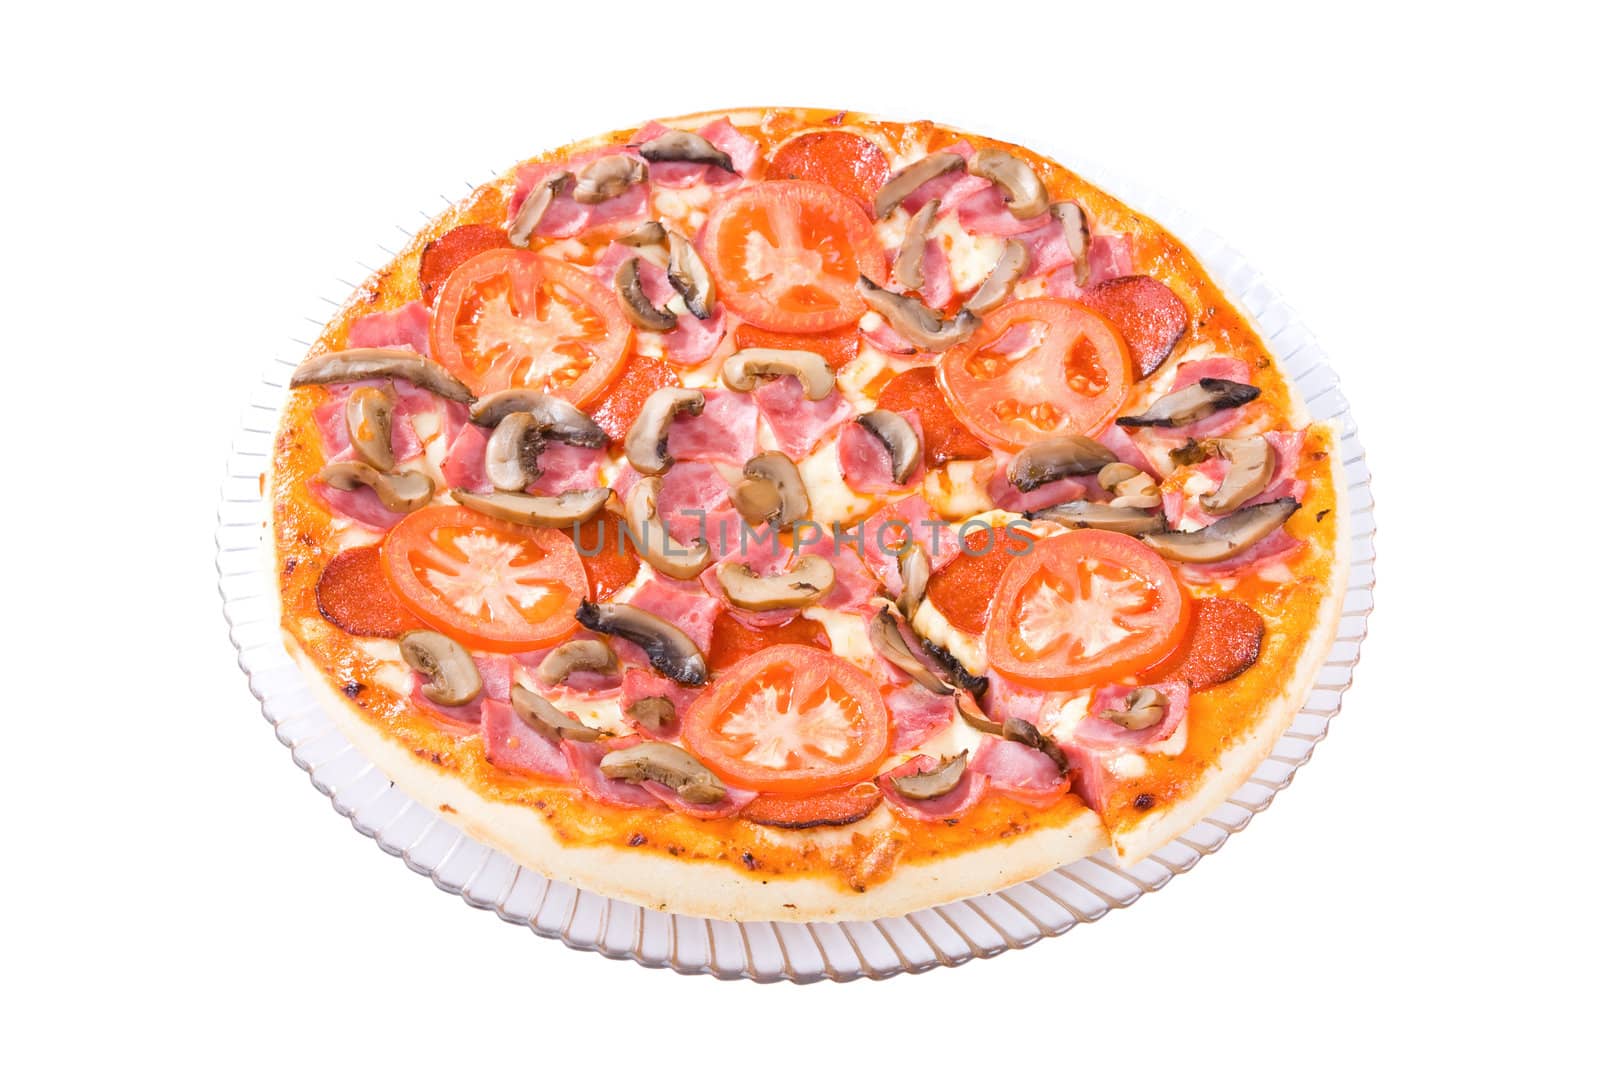 Pizza Primavera by vsurkov